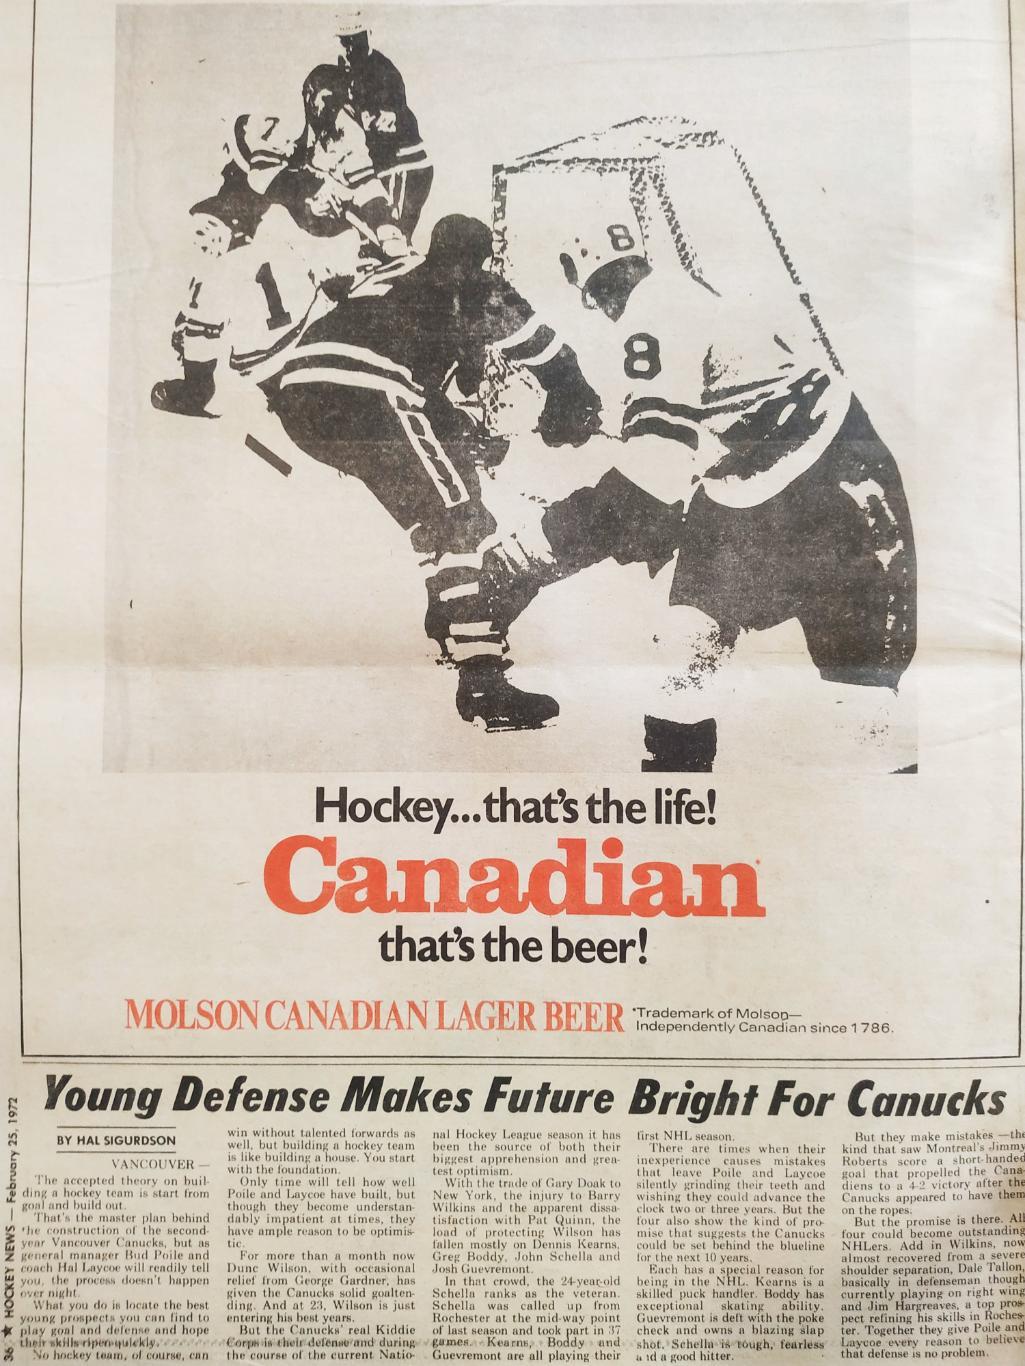 ХОККЕЙ ЖУРНАЛ ЕЖЕНЕДЕЛЬНИК НХЛ НОВОСТИ ХОККЕЯ FEB.25 1972 NHL THE HOCKEY NEWS 7